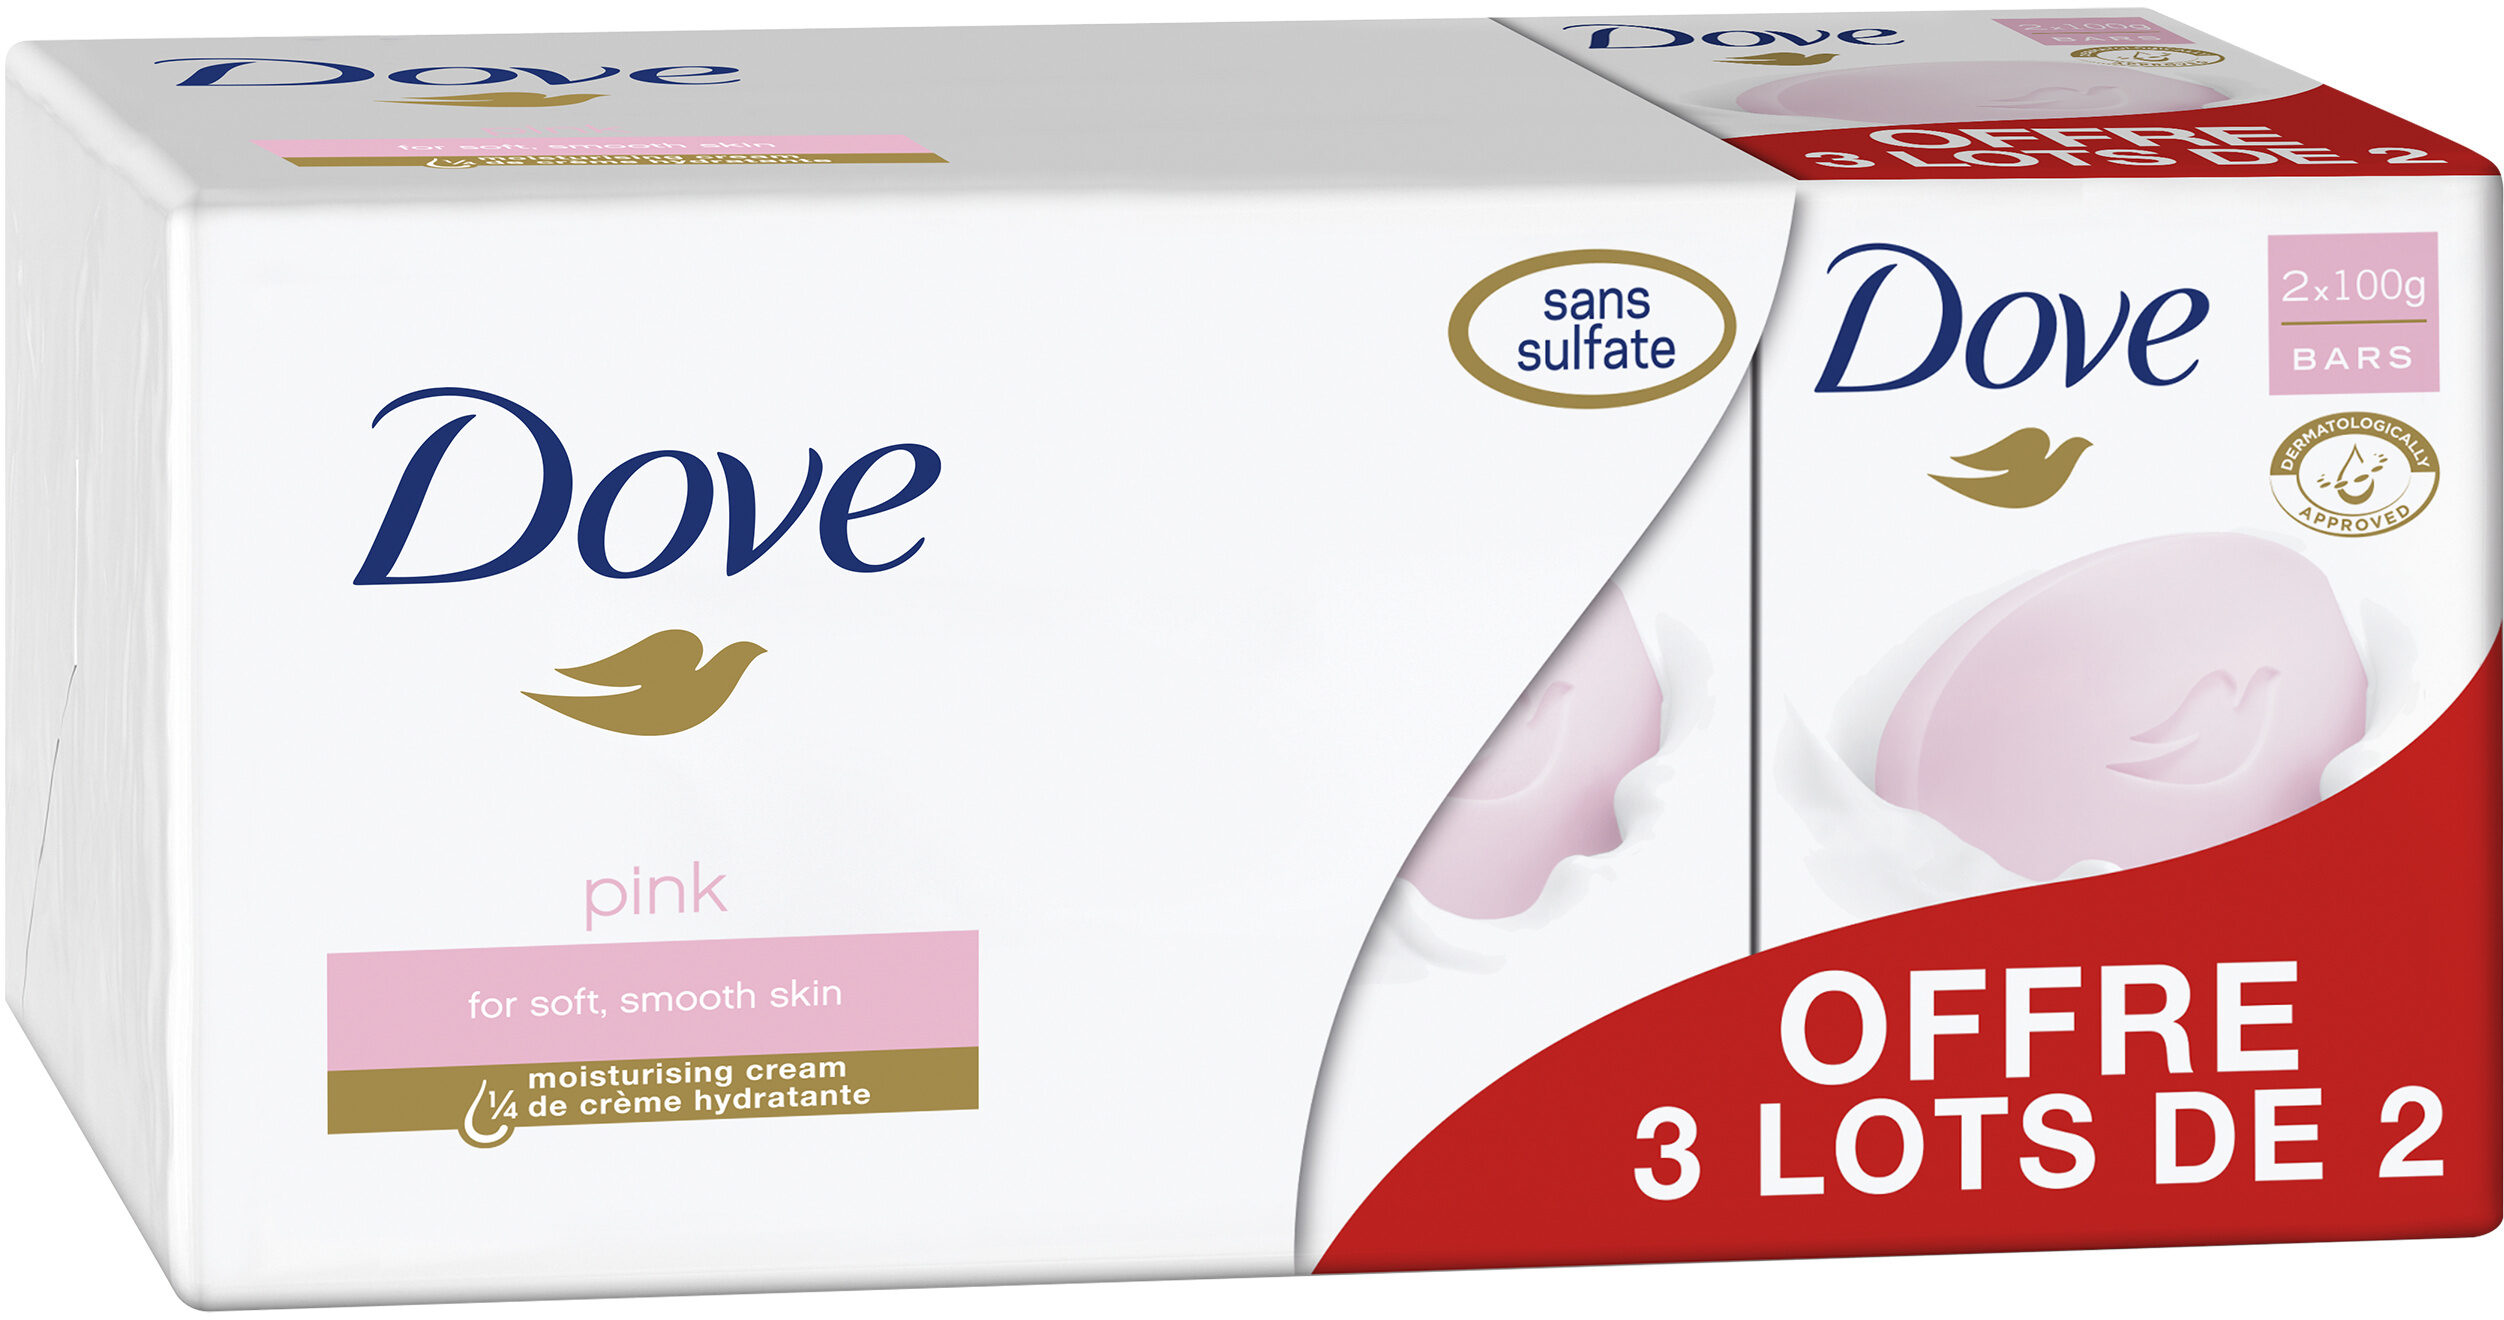 Dove Savon Pain de Toilette Pink Lot 2x100g - Product - fr